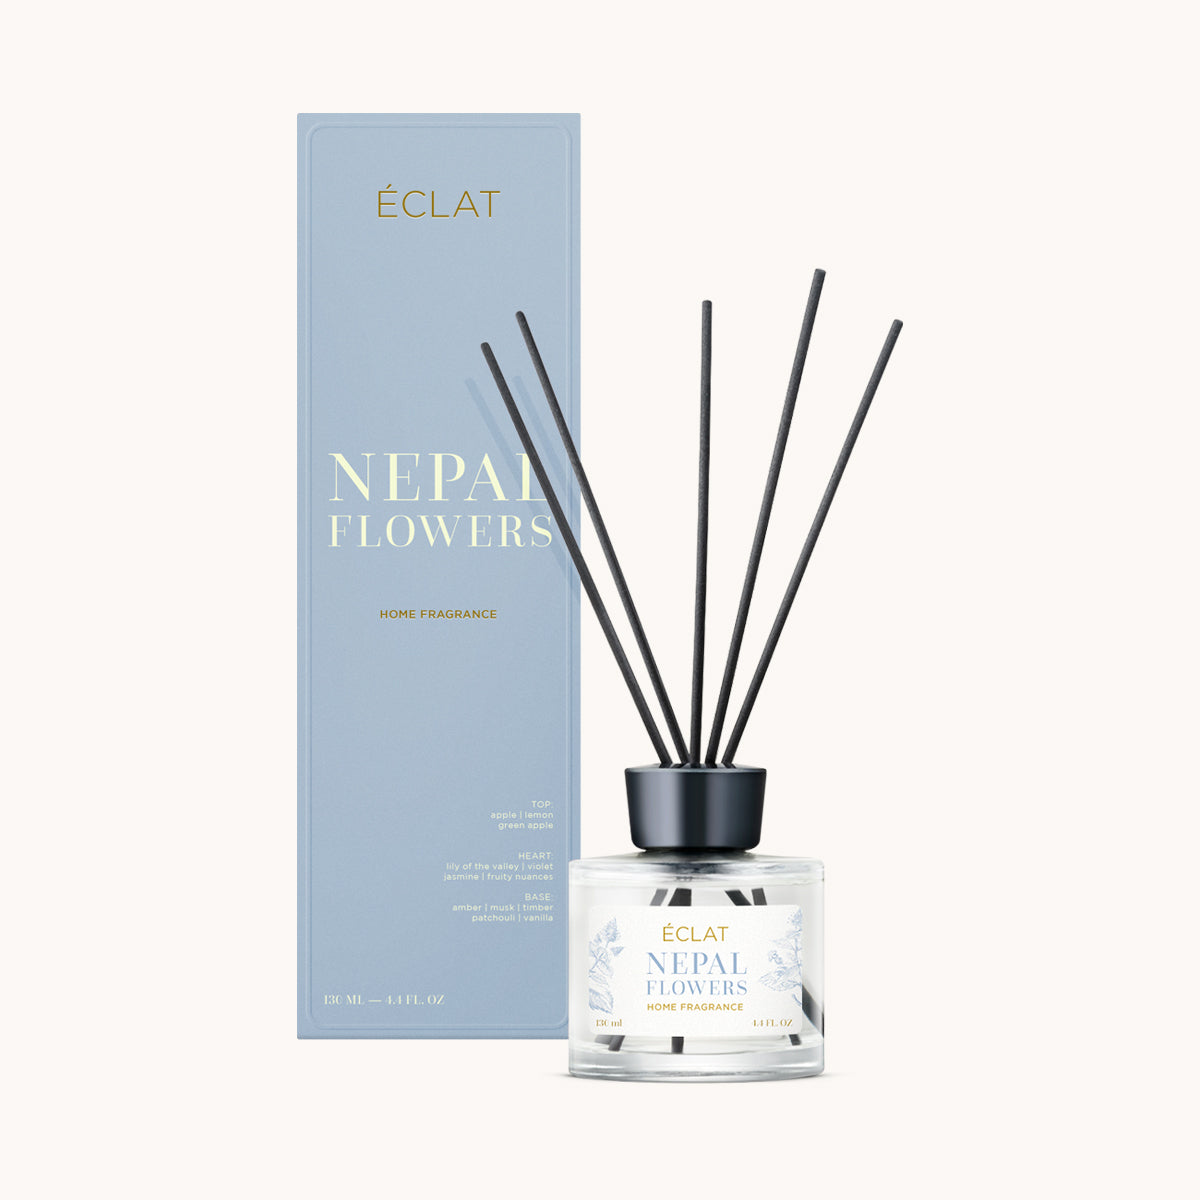 ÉCLAT Nepal Flowers Room Fragrance Sticks